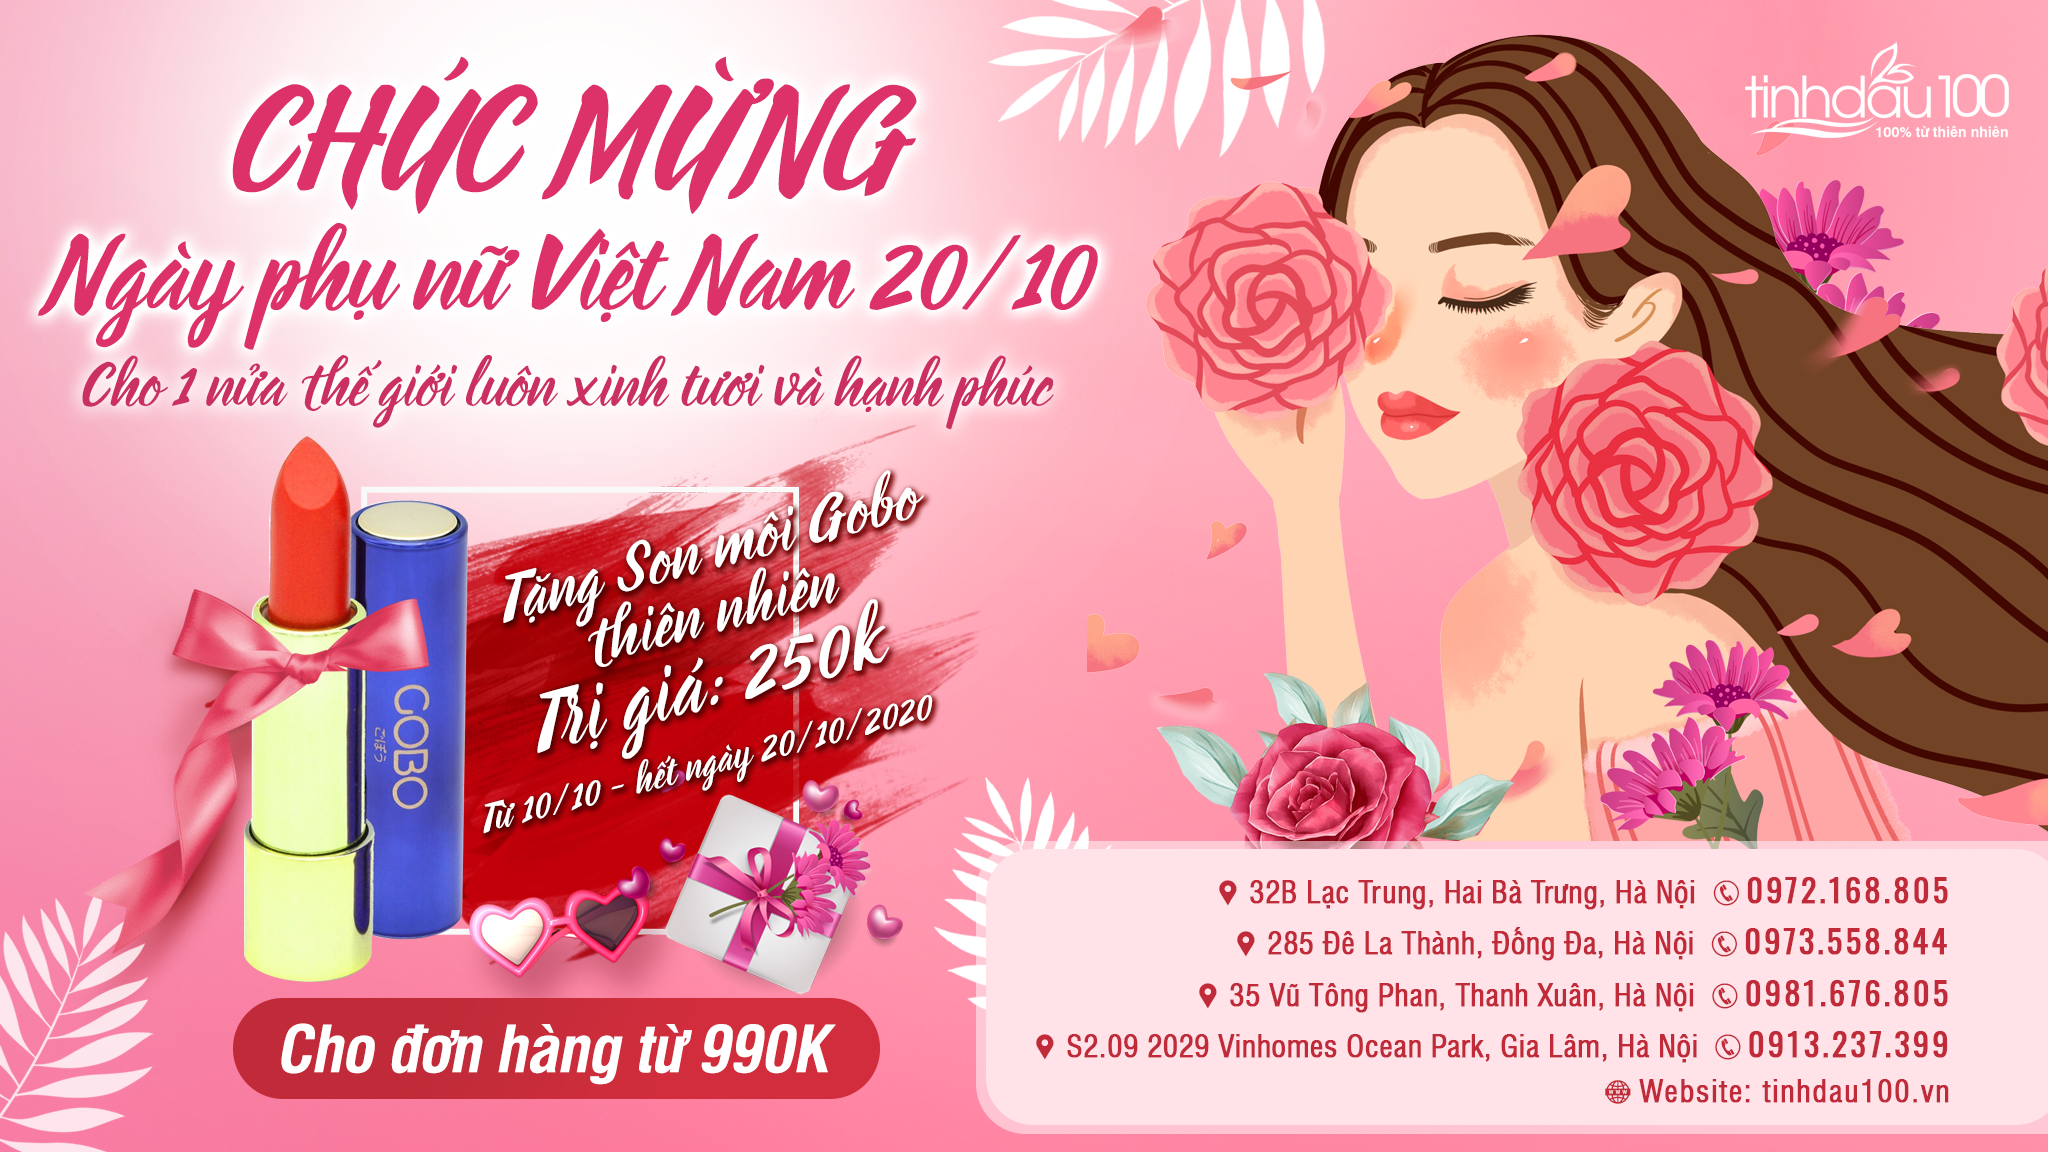 Chúc mừng ngày phụ nữ Việt Nam, Tinh Dầu 100 shop tặng son Gobo, cho 1 nửa thế giới luôn xinh tươi